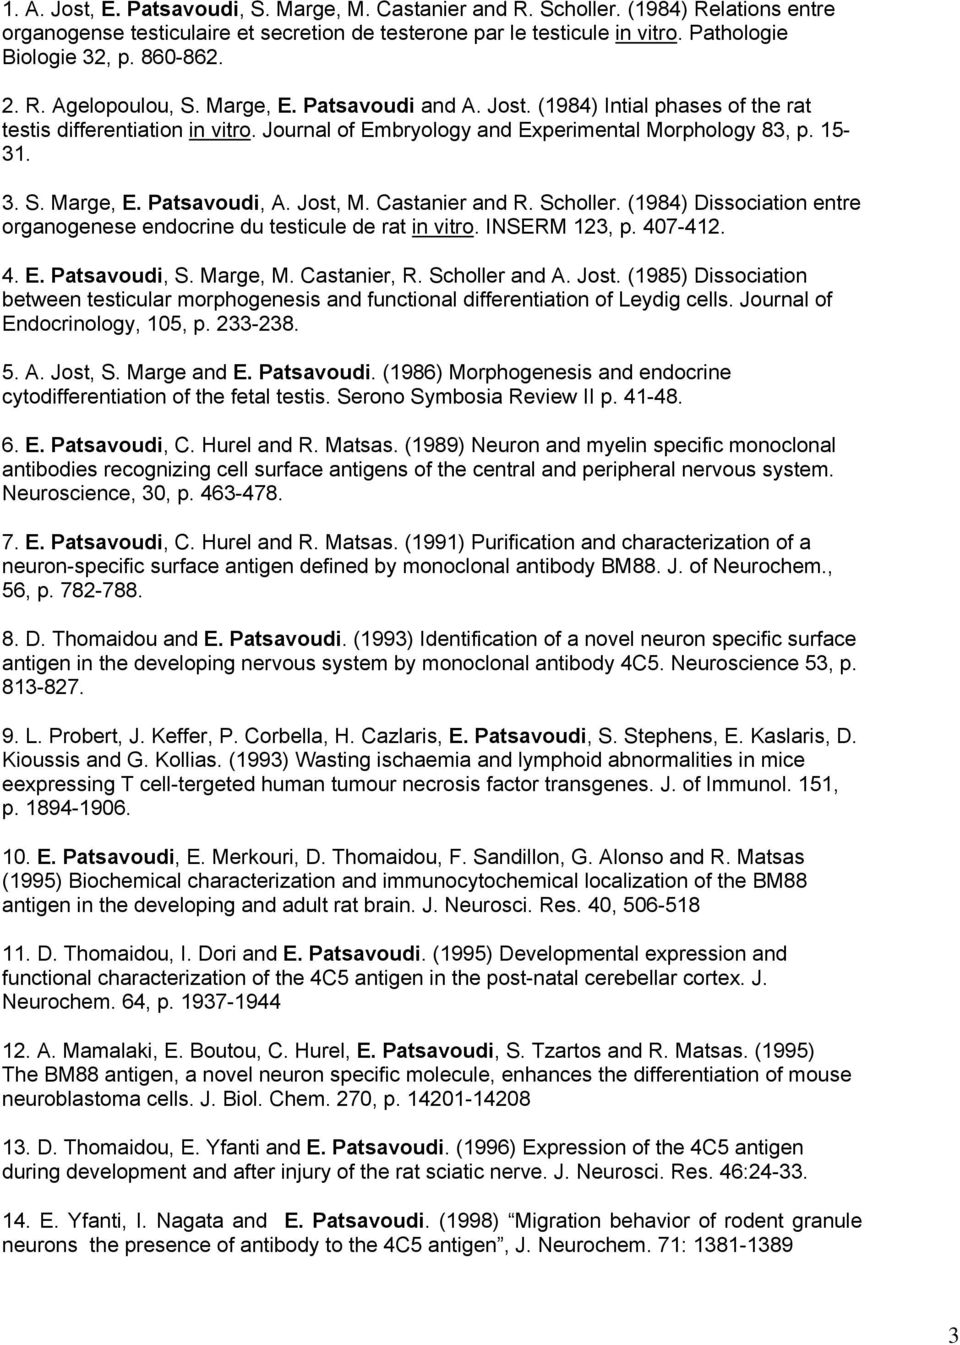 Jost, M. Castanier and R. Scholler. (1984) Dissociation entre organogenese endocrine du testicule de rat in vitro. INSERM 123, p. 407-412. 4. E. Patsavoudi, S. Marge, M. Castanier, R. Scholler and A.